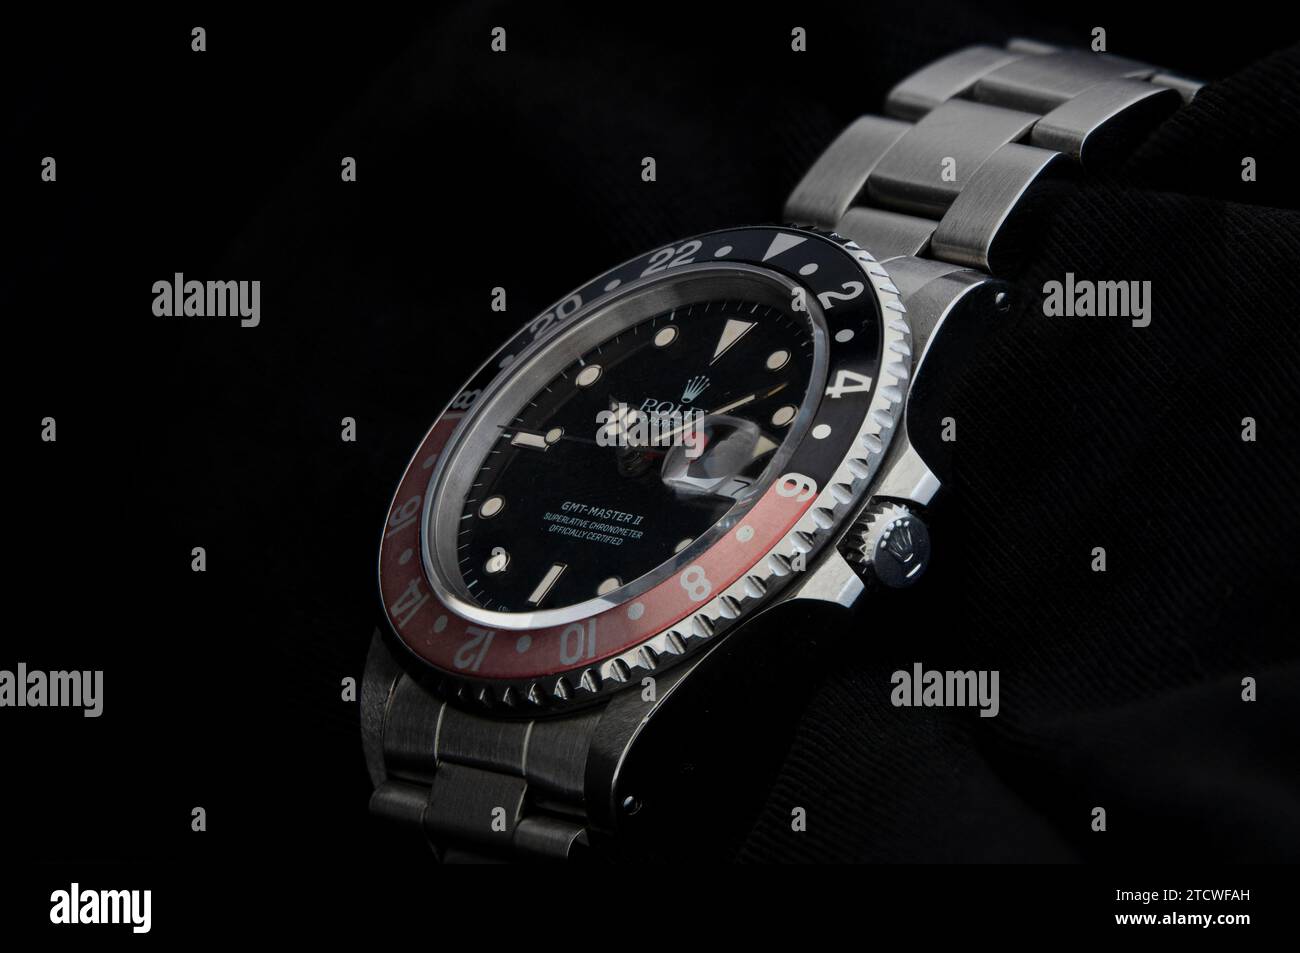 Rolex GMT Master II montre-bracelet de Rolex un horloger suisse de montres de luxe. Isolé sur fond noir. Copenhague, Danemark - 20 septembre 2023 Banque D'Images